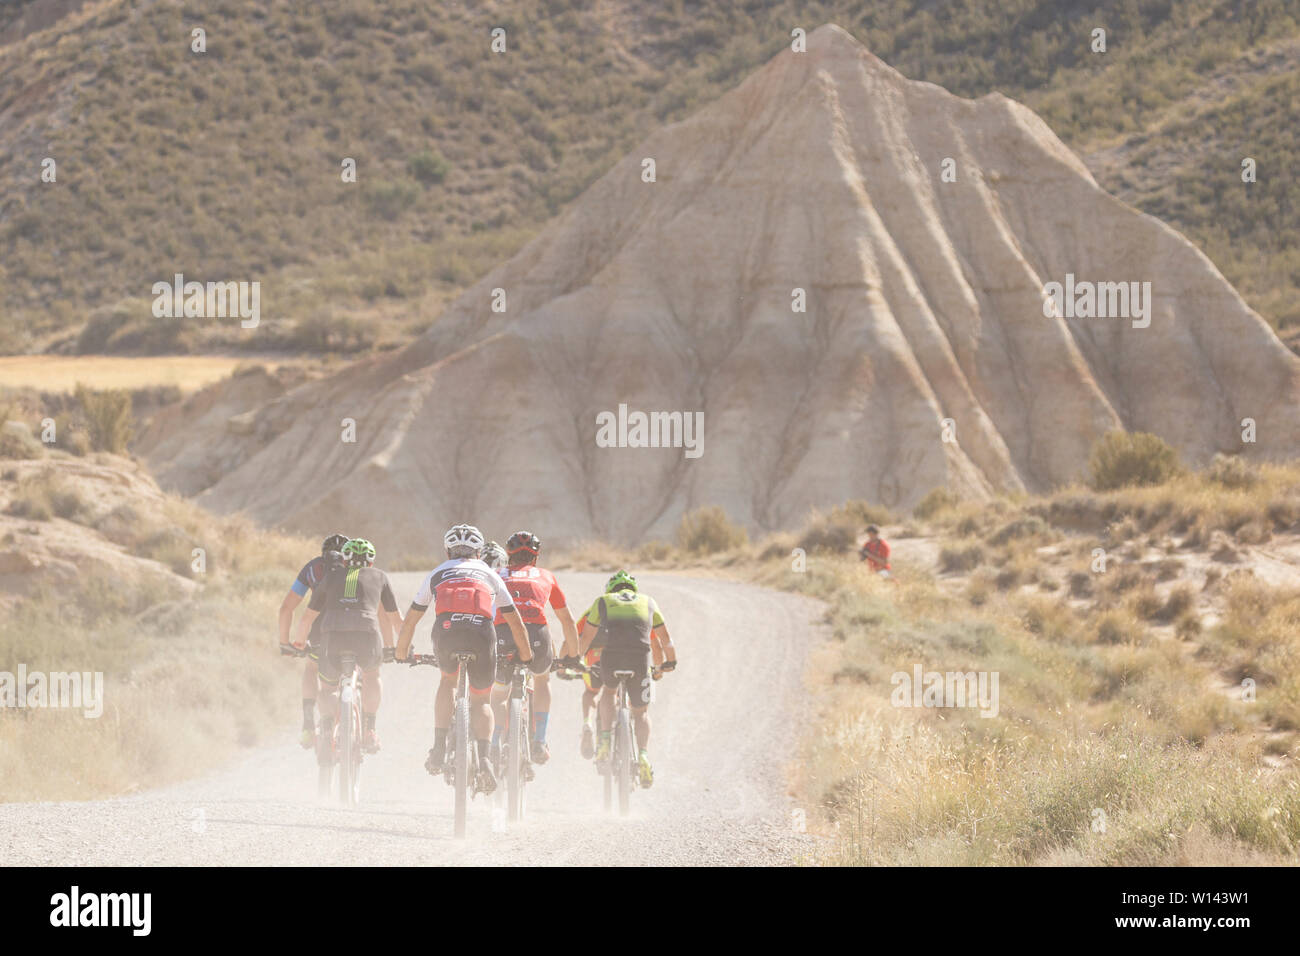 Extreme Bardenas 2019. 1500 Menschen fahren mit dem Rad in der Wüste Europas. Naturpark Bardenas Reales. Biosphärenreservat. Navarra. Spanien Stockfoto